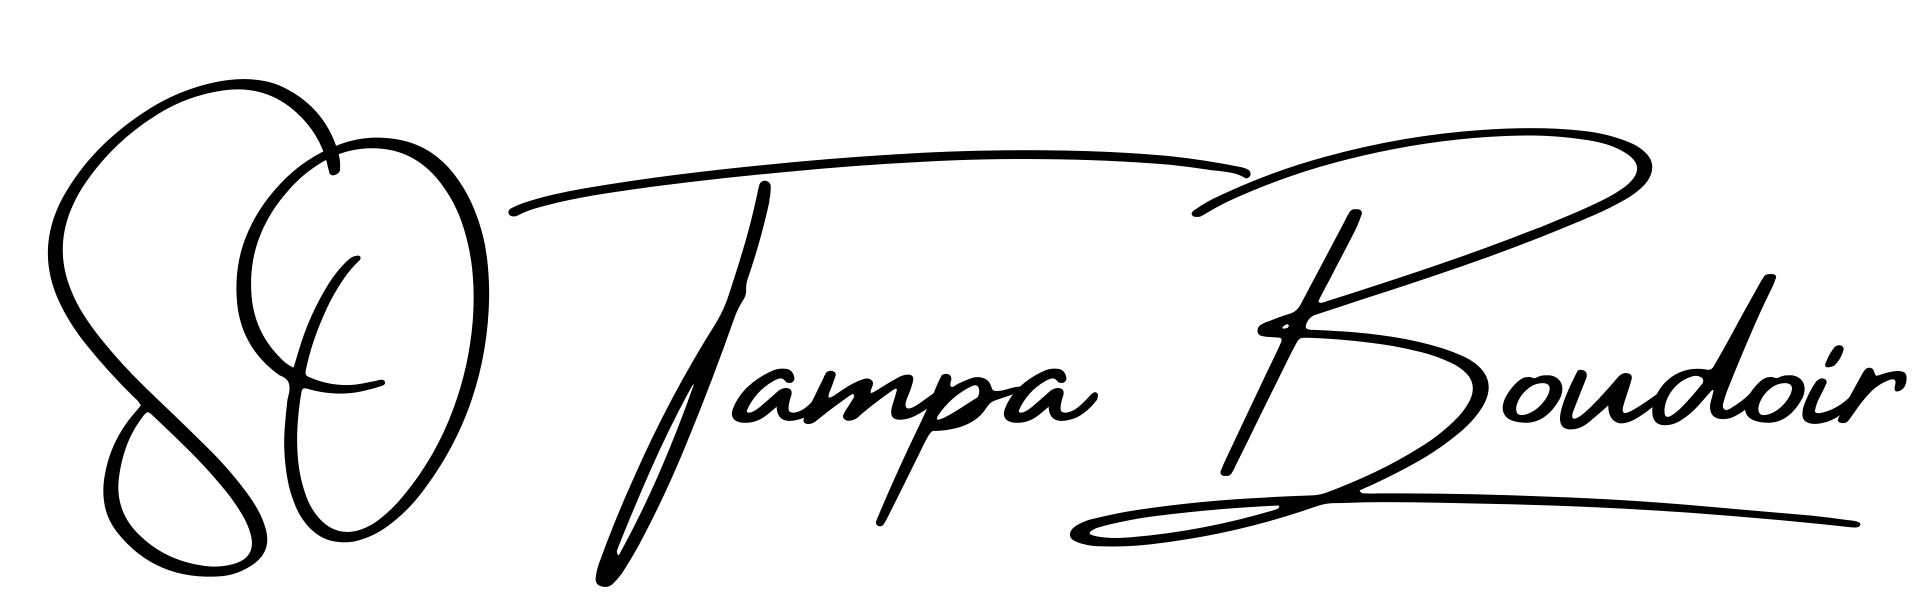 SO Tampa Boudoir logo for header